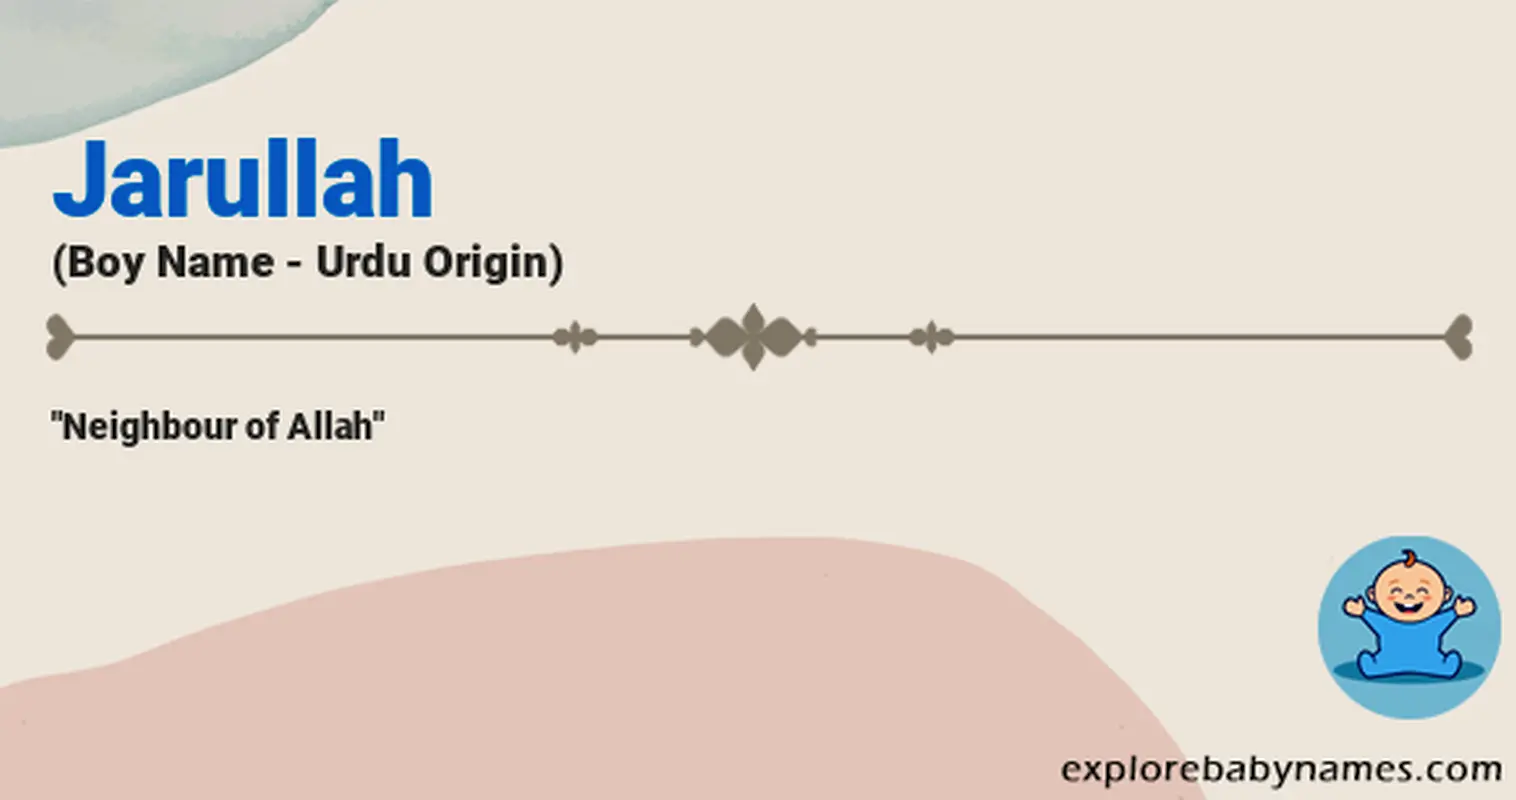 Meaning of Jarullah